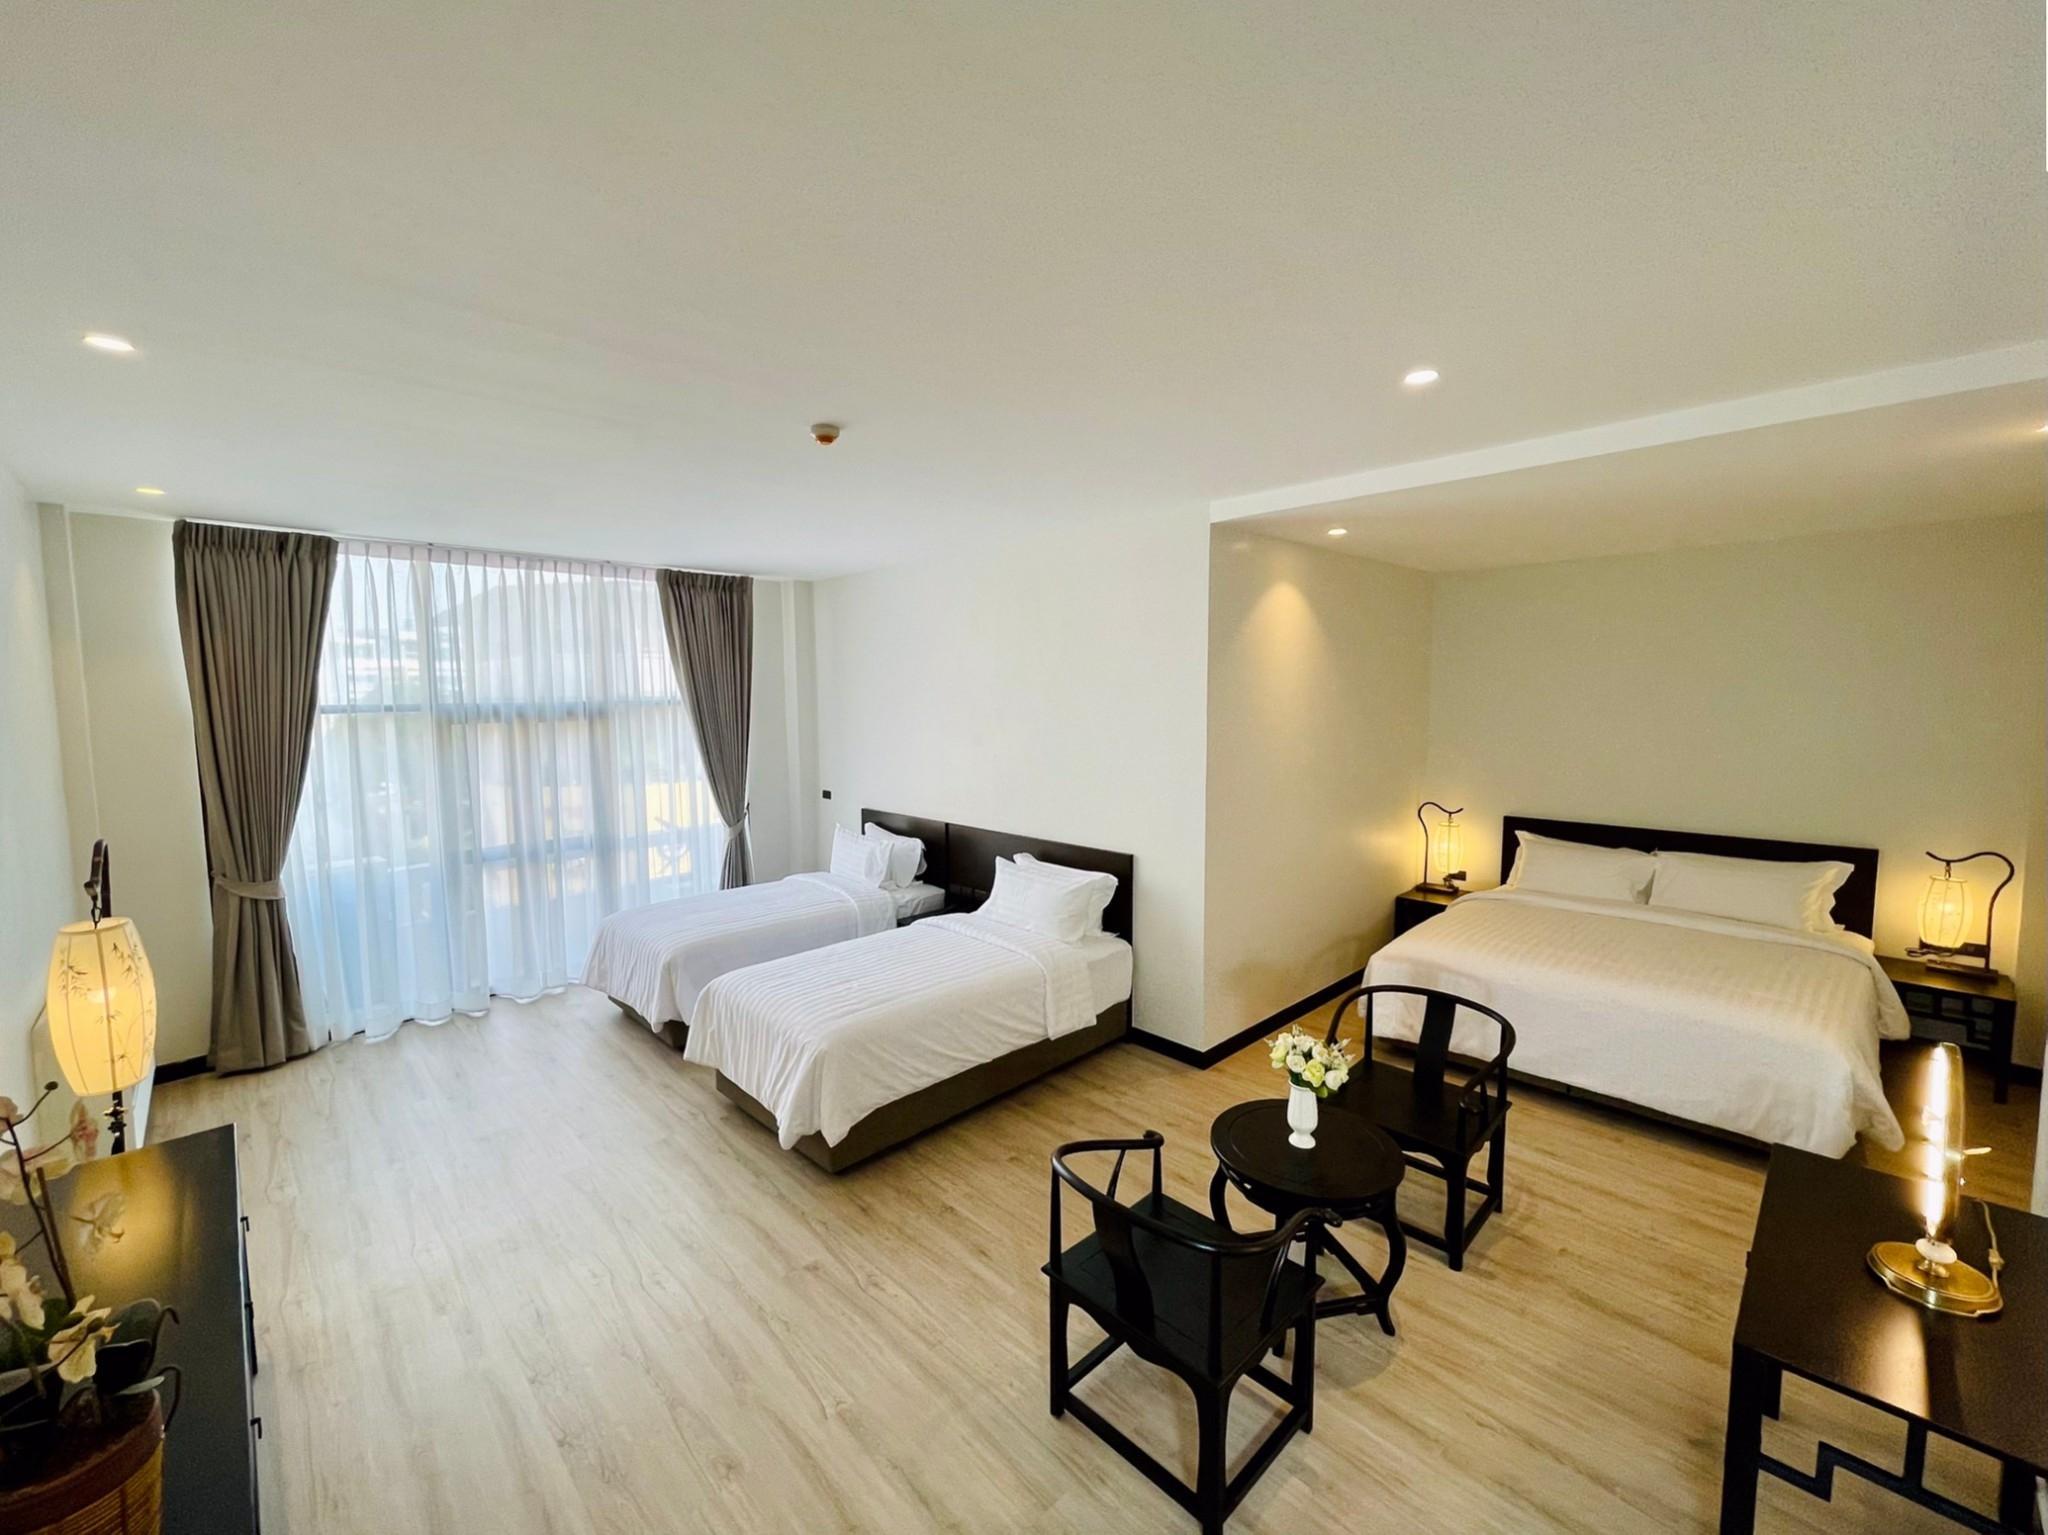 รีวิวโรงแรมโอไทเฮง - โปรโมชั่นโรงแรม 3 ดาวในกรุงเทพฯ | Trip.com